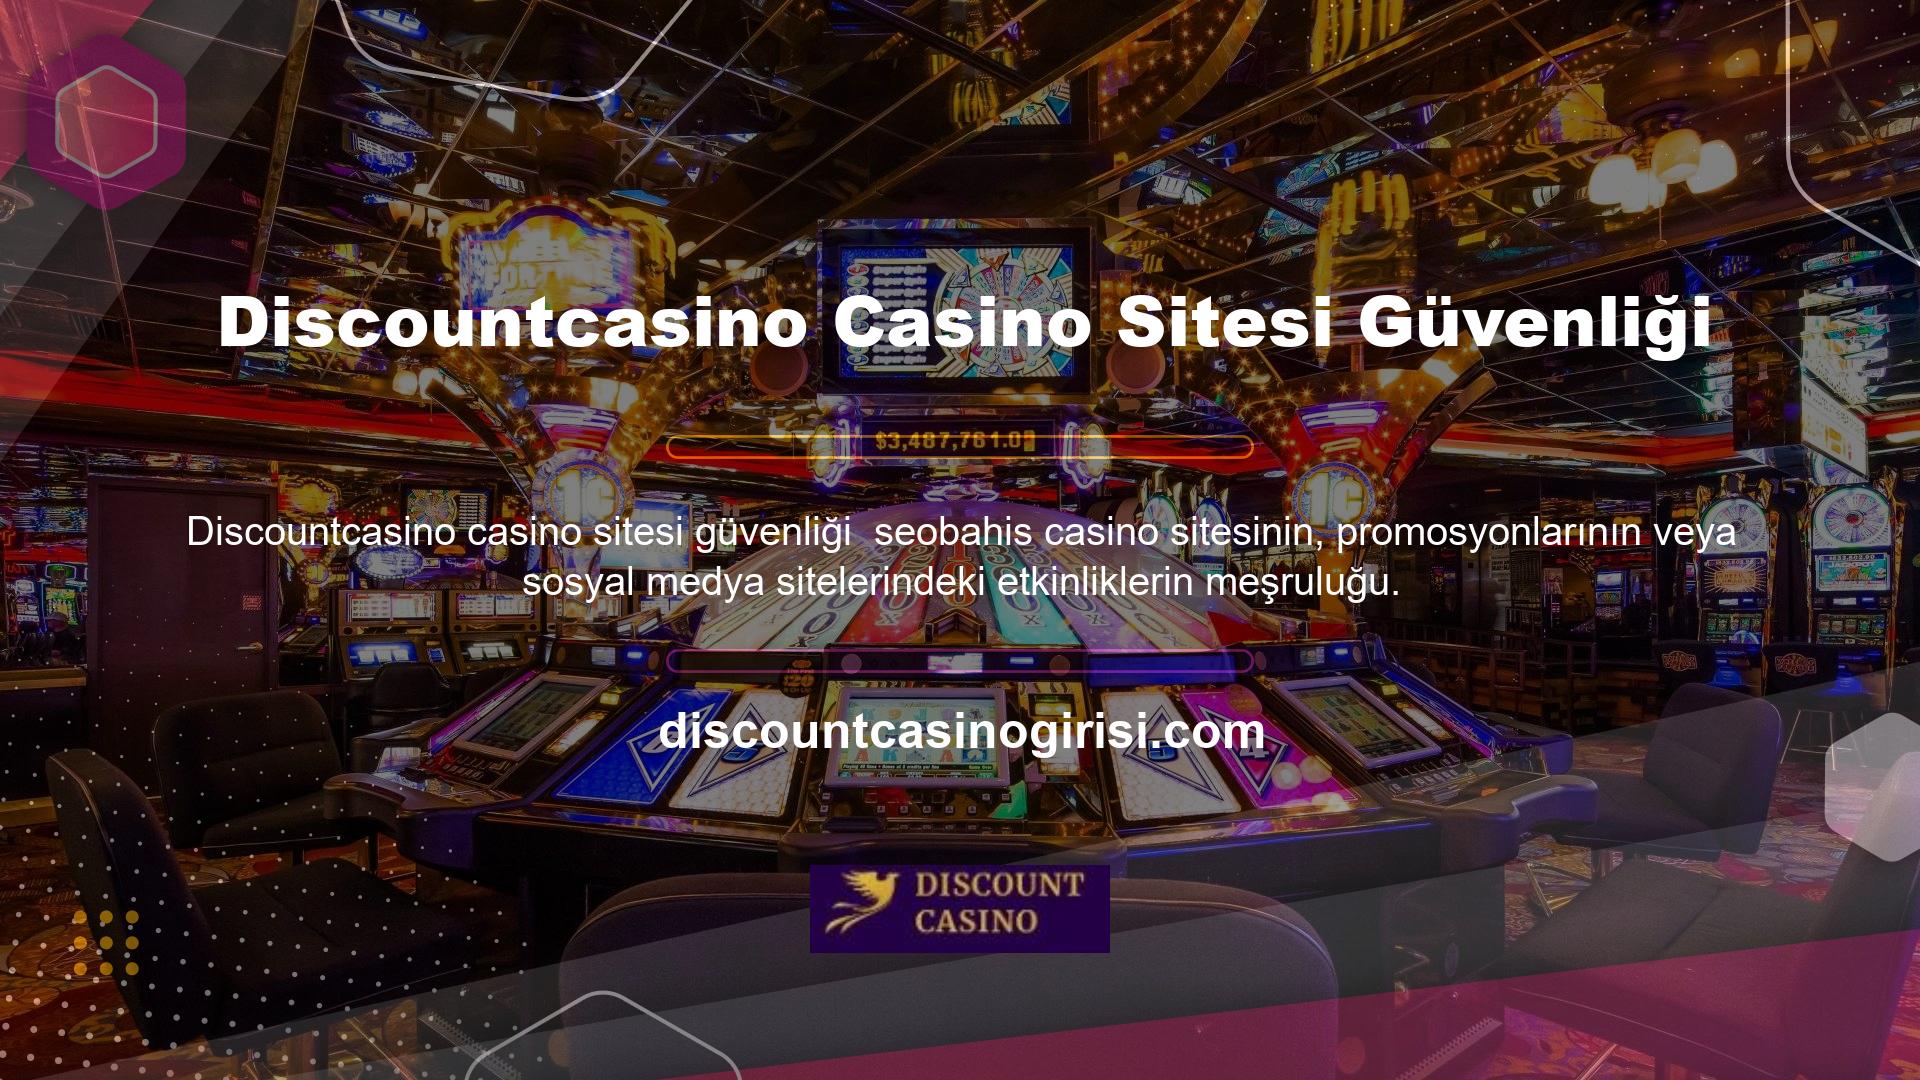 Programın altyapısının ötesinde, casino güvenilirliğine katkıda bulunan, herhangi bir faktörün var olup olmadığının kesin olarak belirlenmesini imkansız kılan başka faktörler de vardır